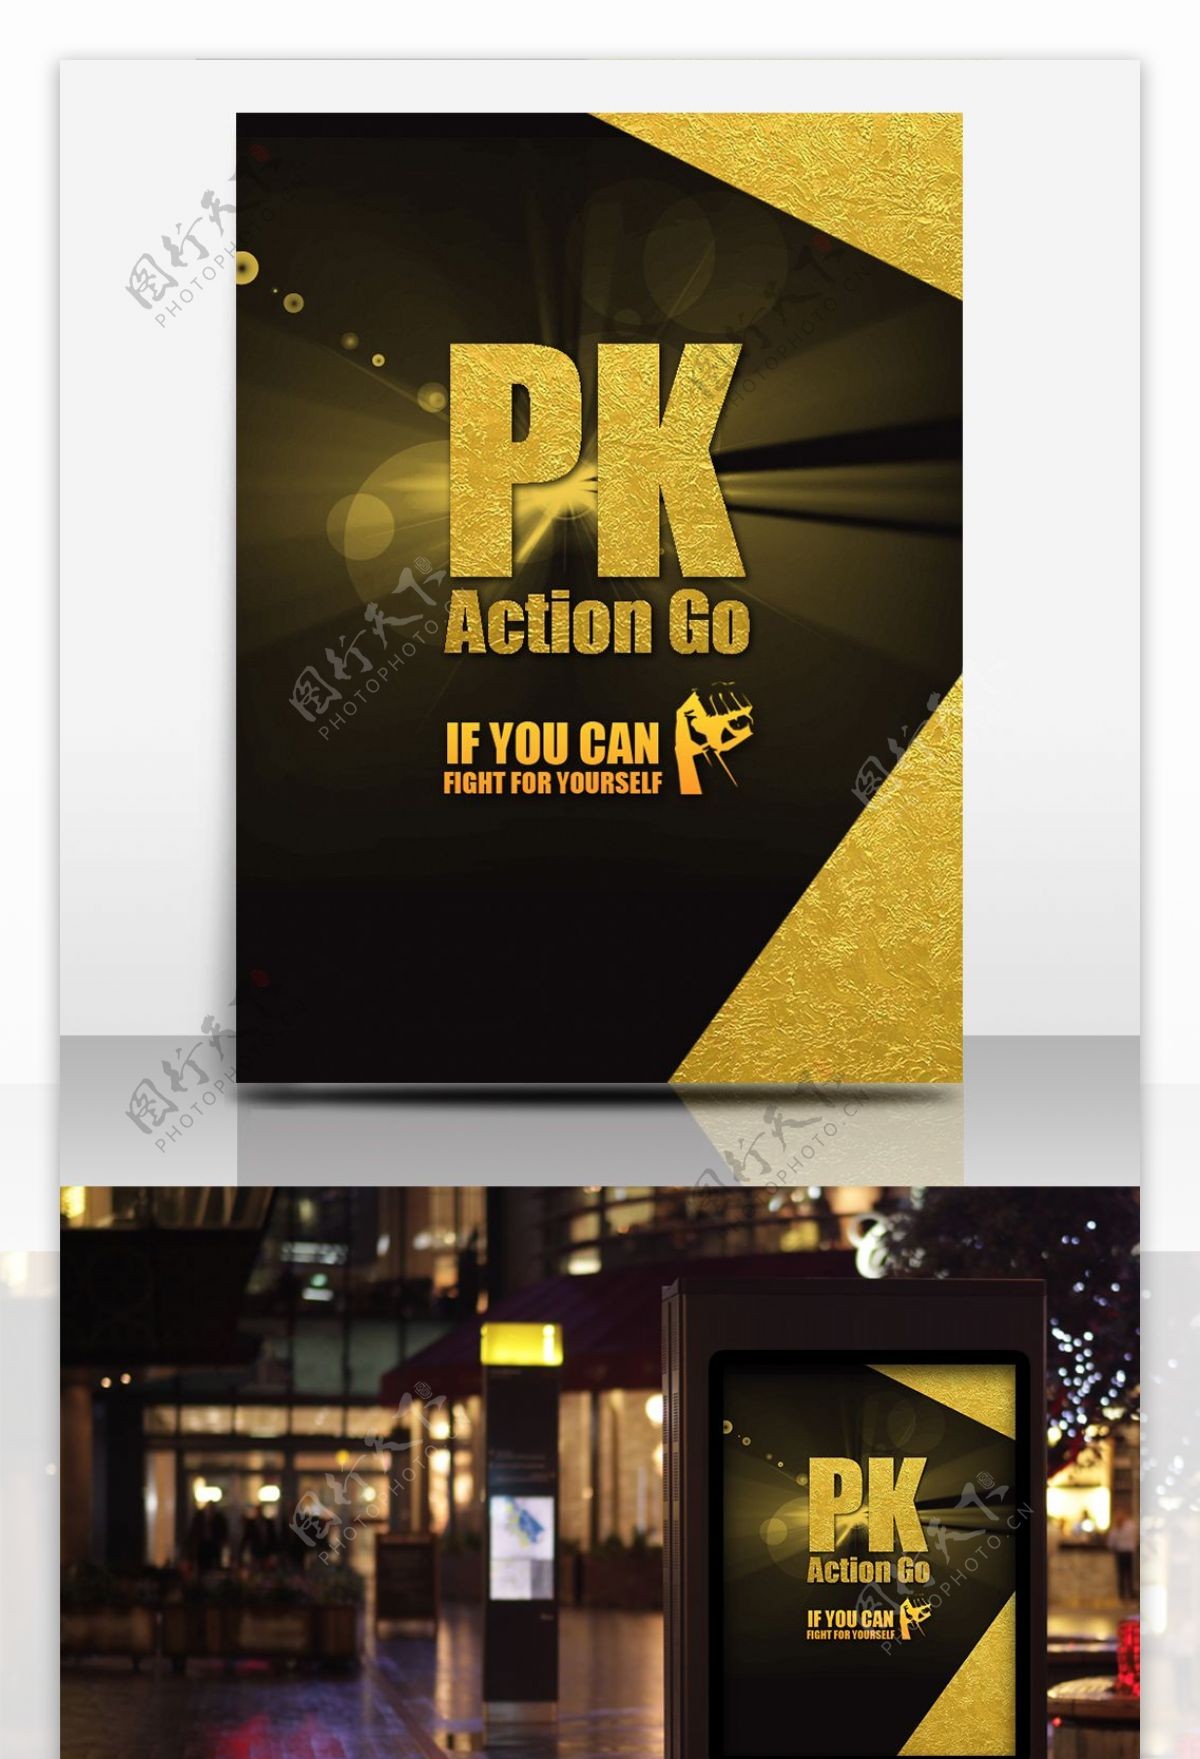 游戏竞赛海报PK黑金霸气版